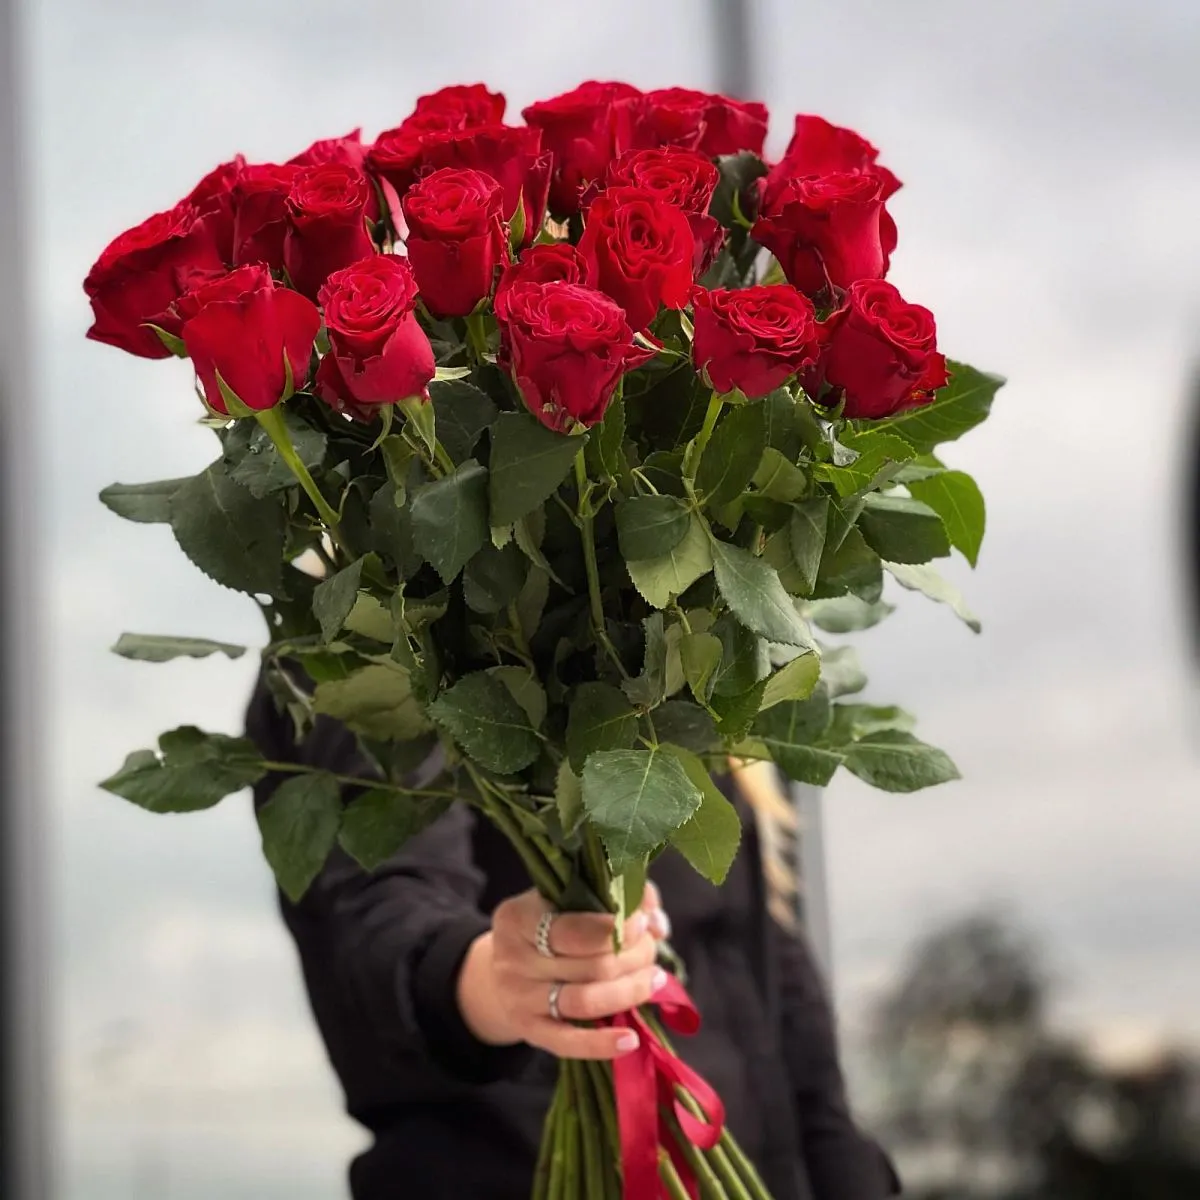 27 красных роз (60 см)